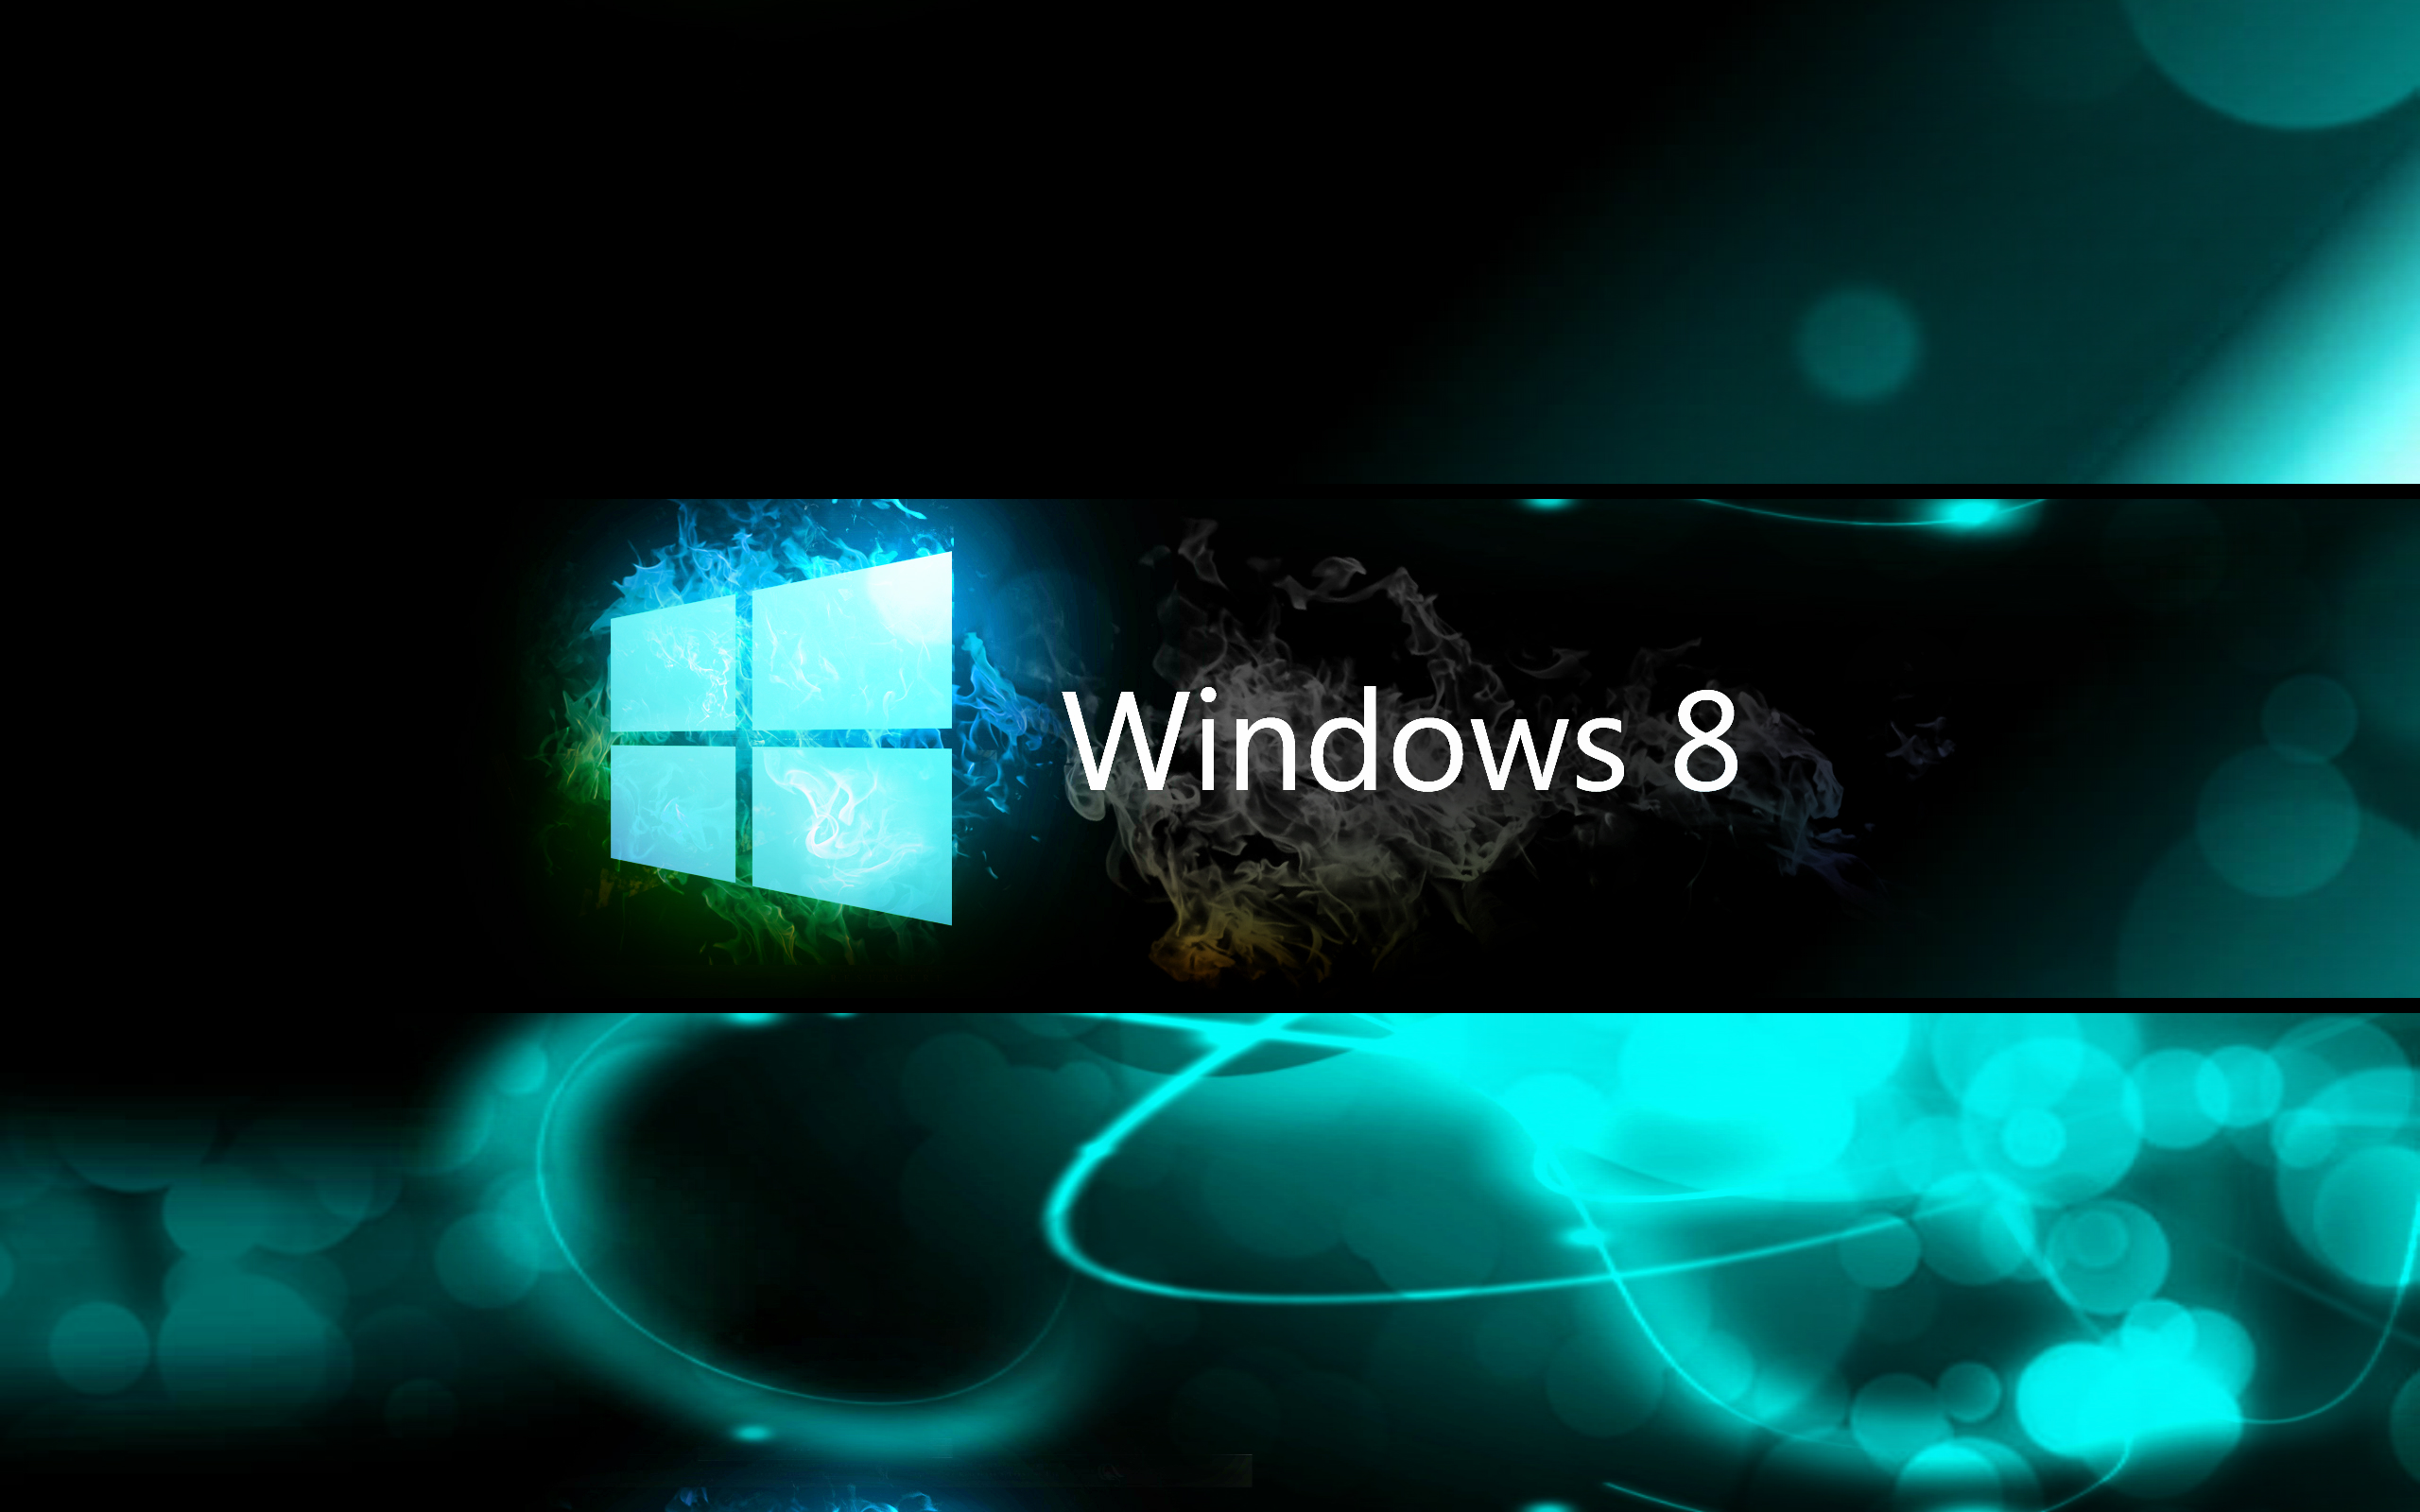 Windows 8 Black Wallpaper Desktop Background for Desktop - Uncalke.com